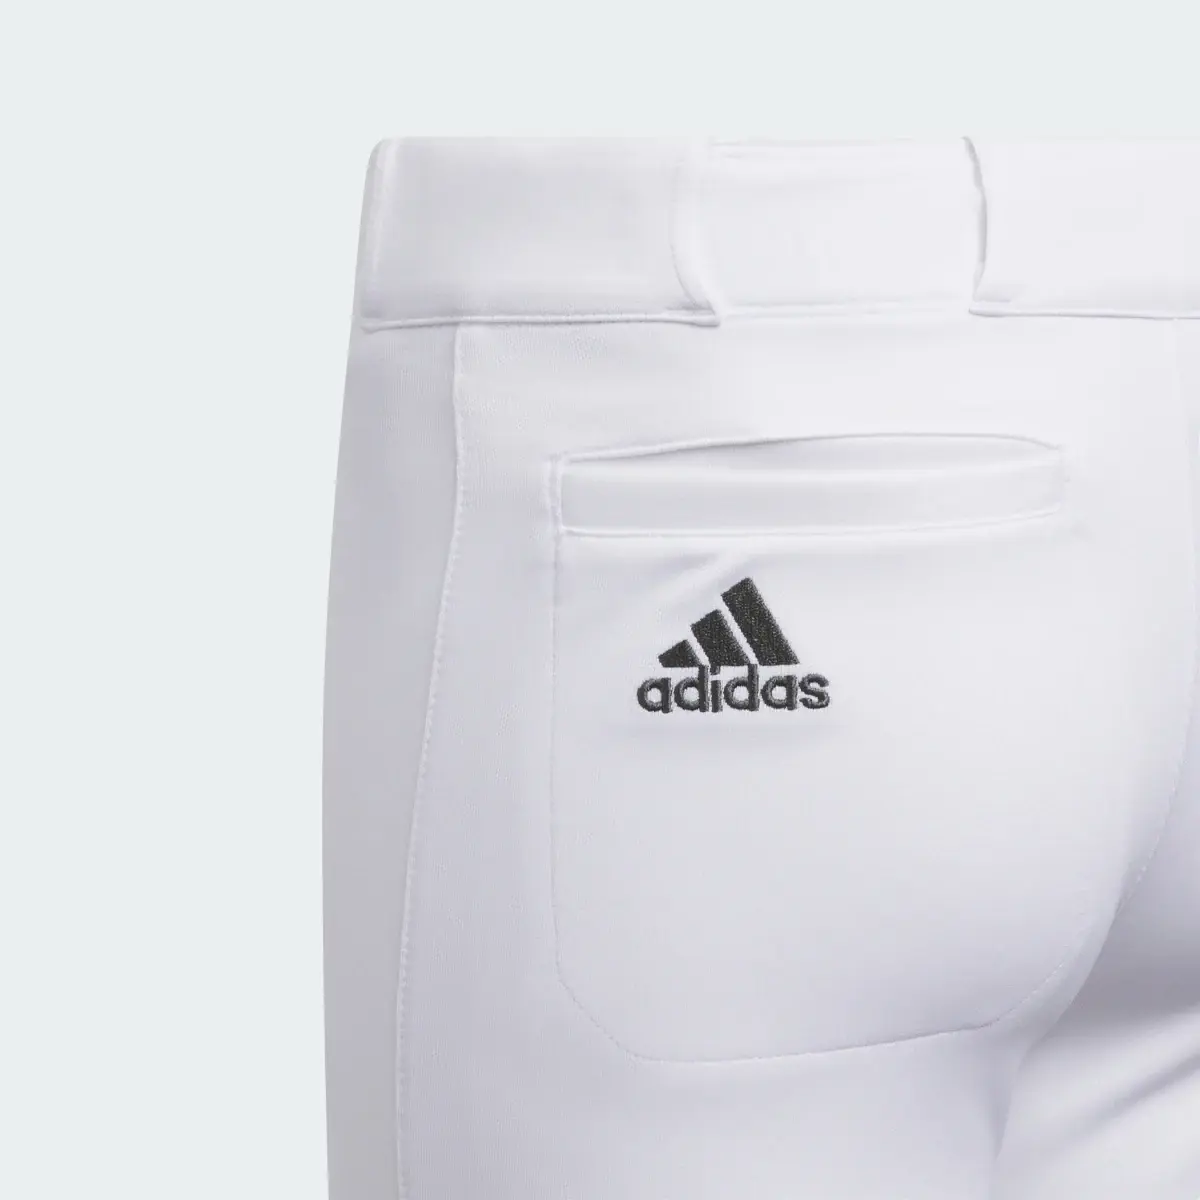 Adidas Youth Softball Knee Length Pant. 3